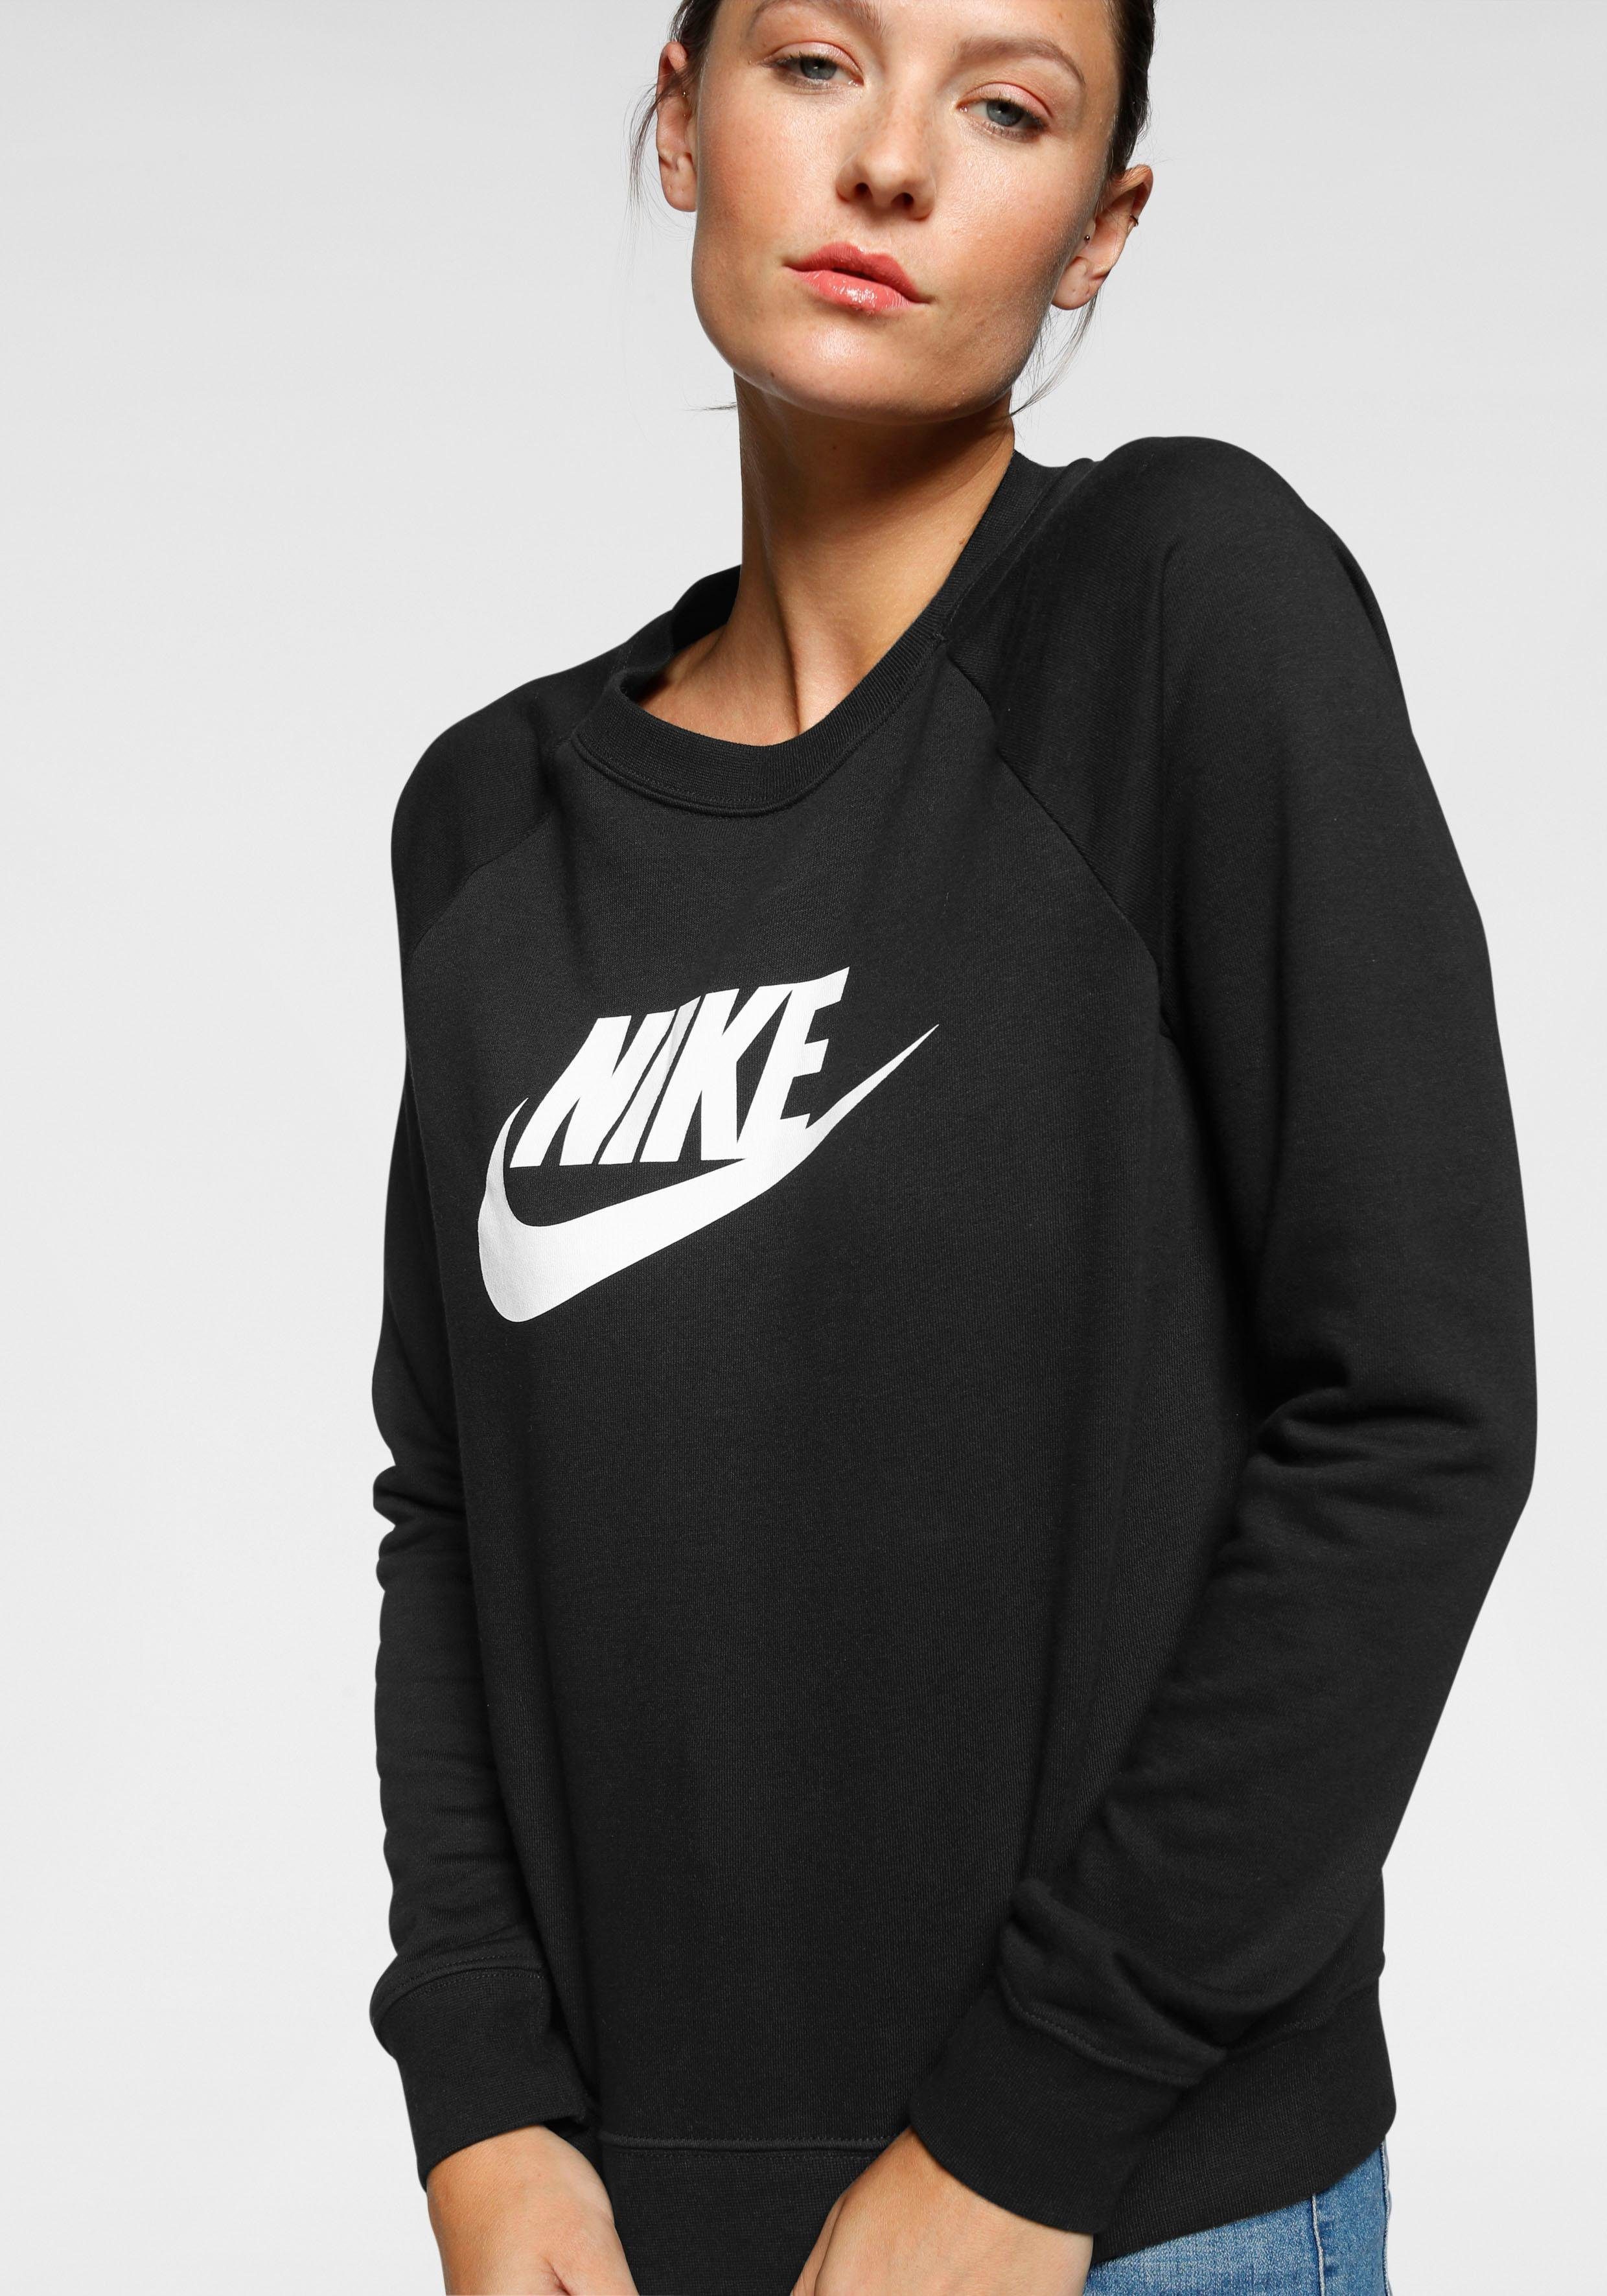 Damenmode Nike Sportswear online kaufen | OTTO